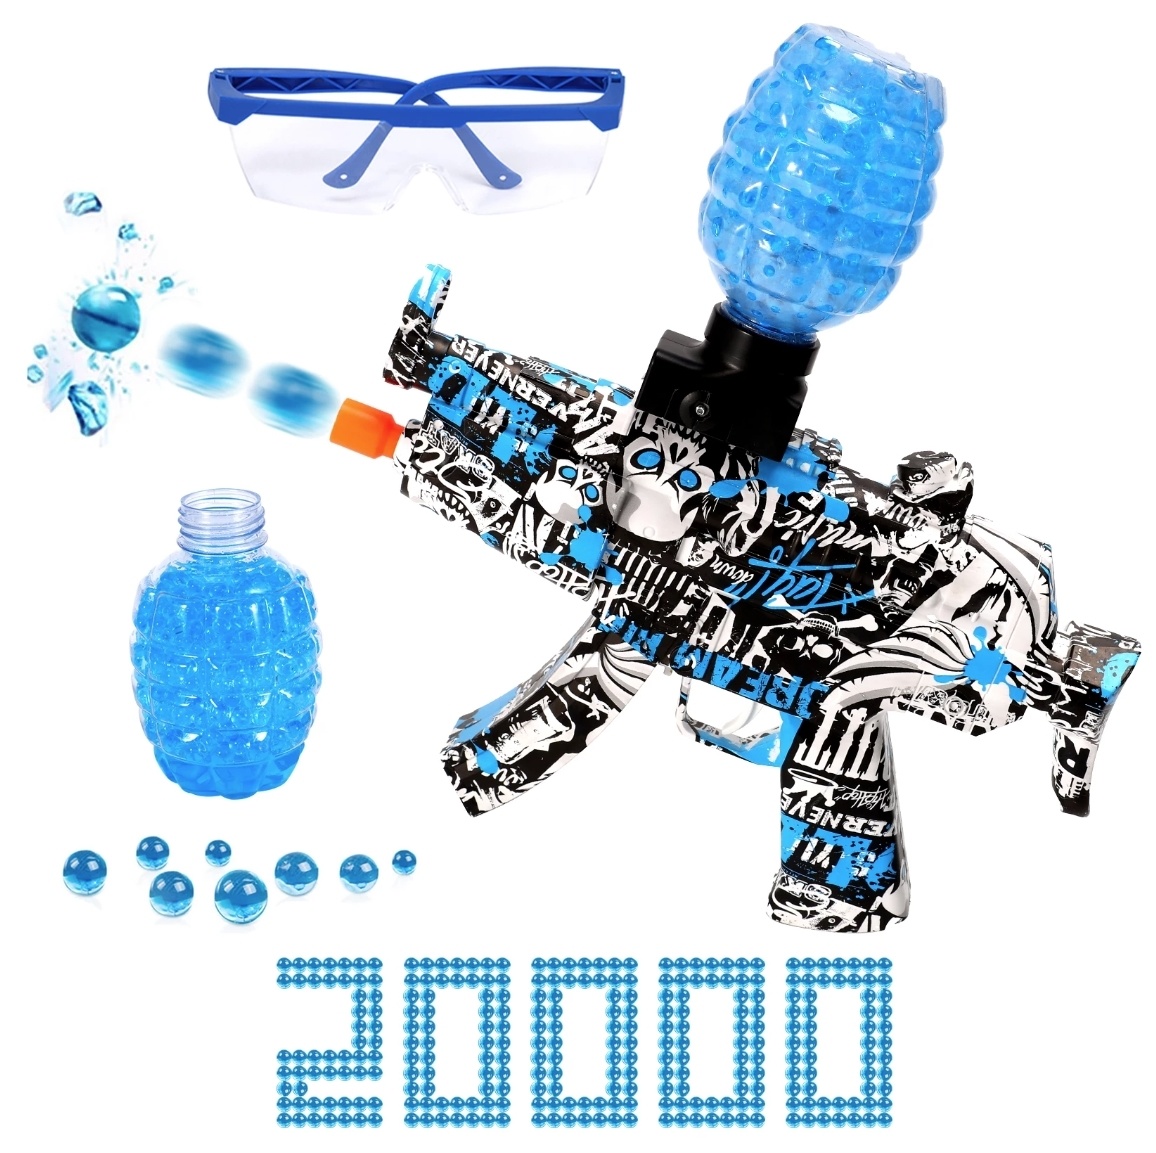 Blaster de Gel Eléctrico con 20,000 Bolas - Pistola de Juguete de Agua Modelo MP5 Azul